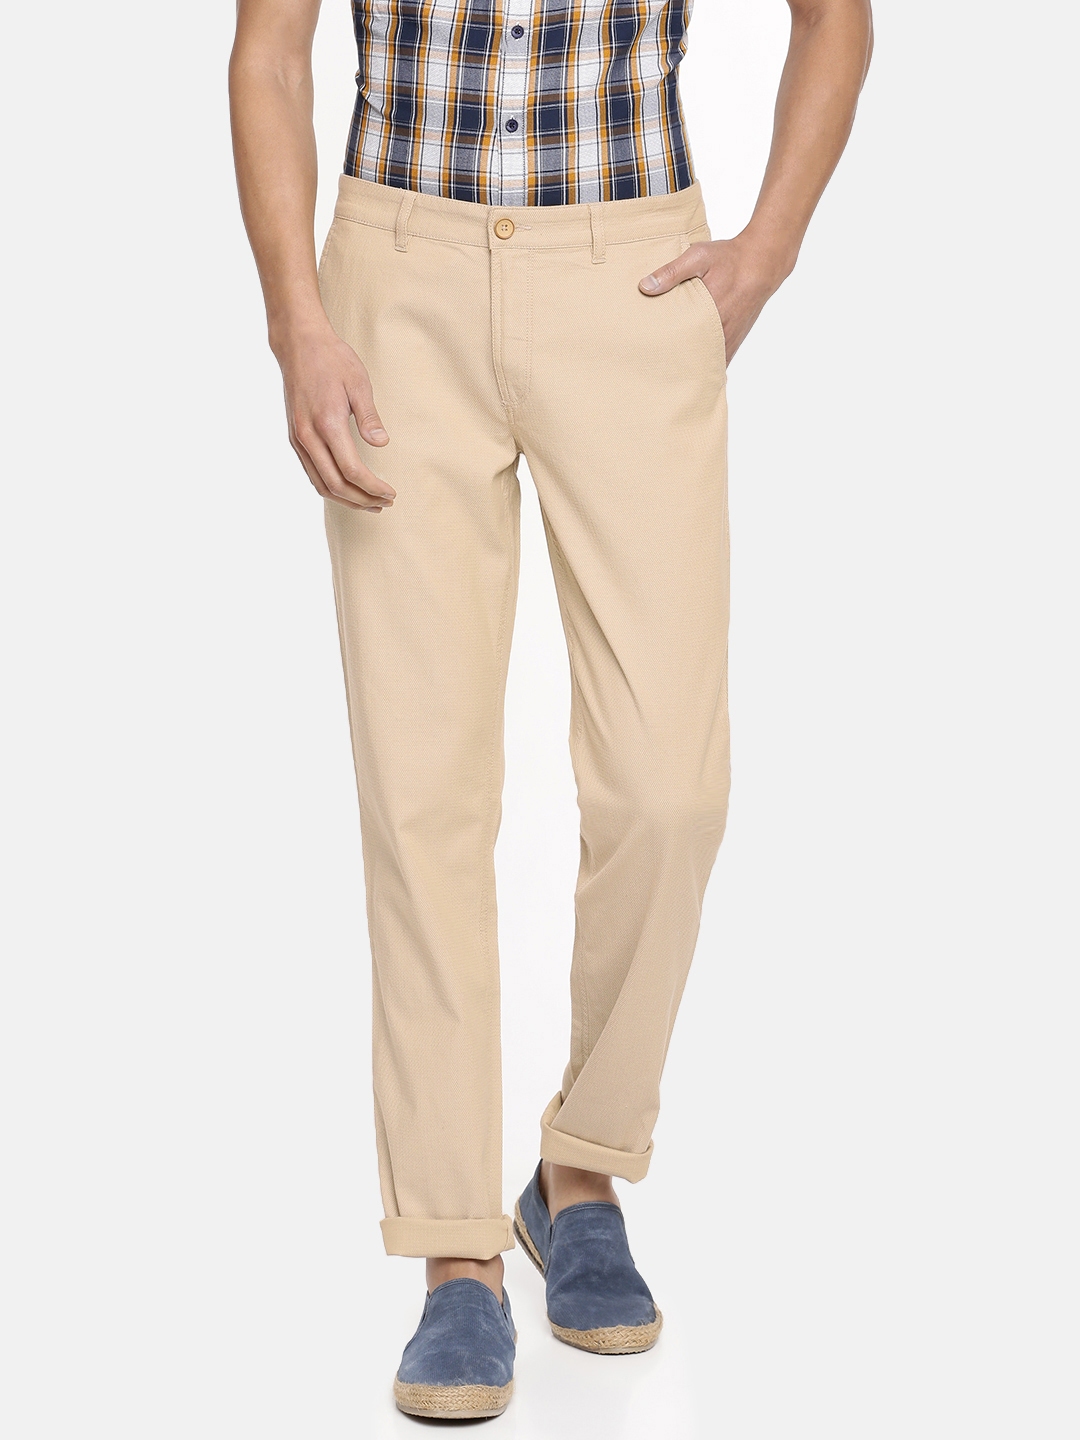 Buy John Players Men Khaki Regular Fit Self Design Formal Trousers   Trousers for Men 6825381  Myntra